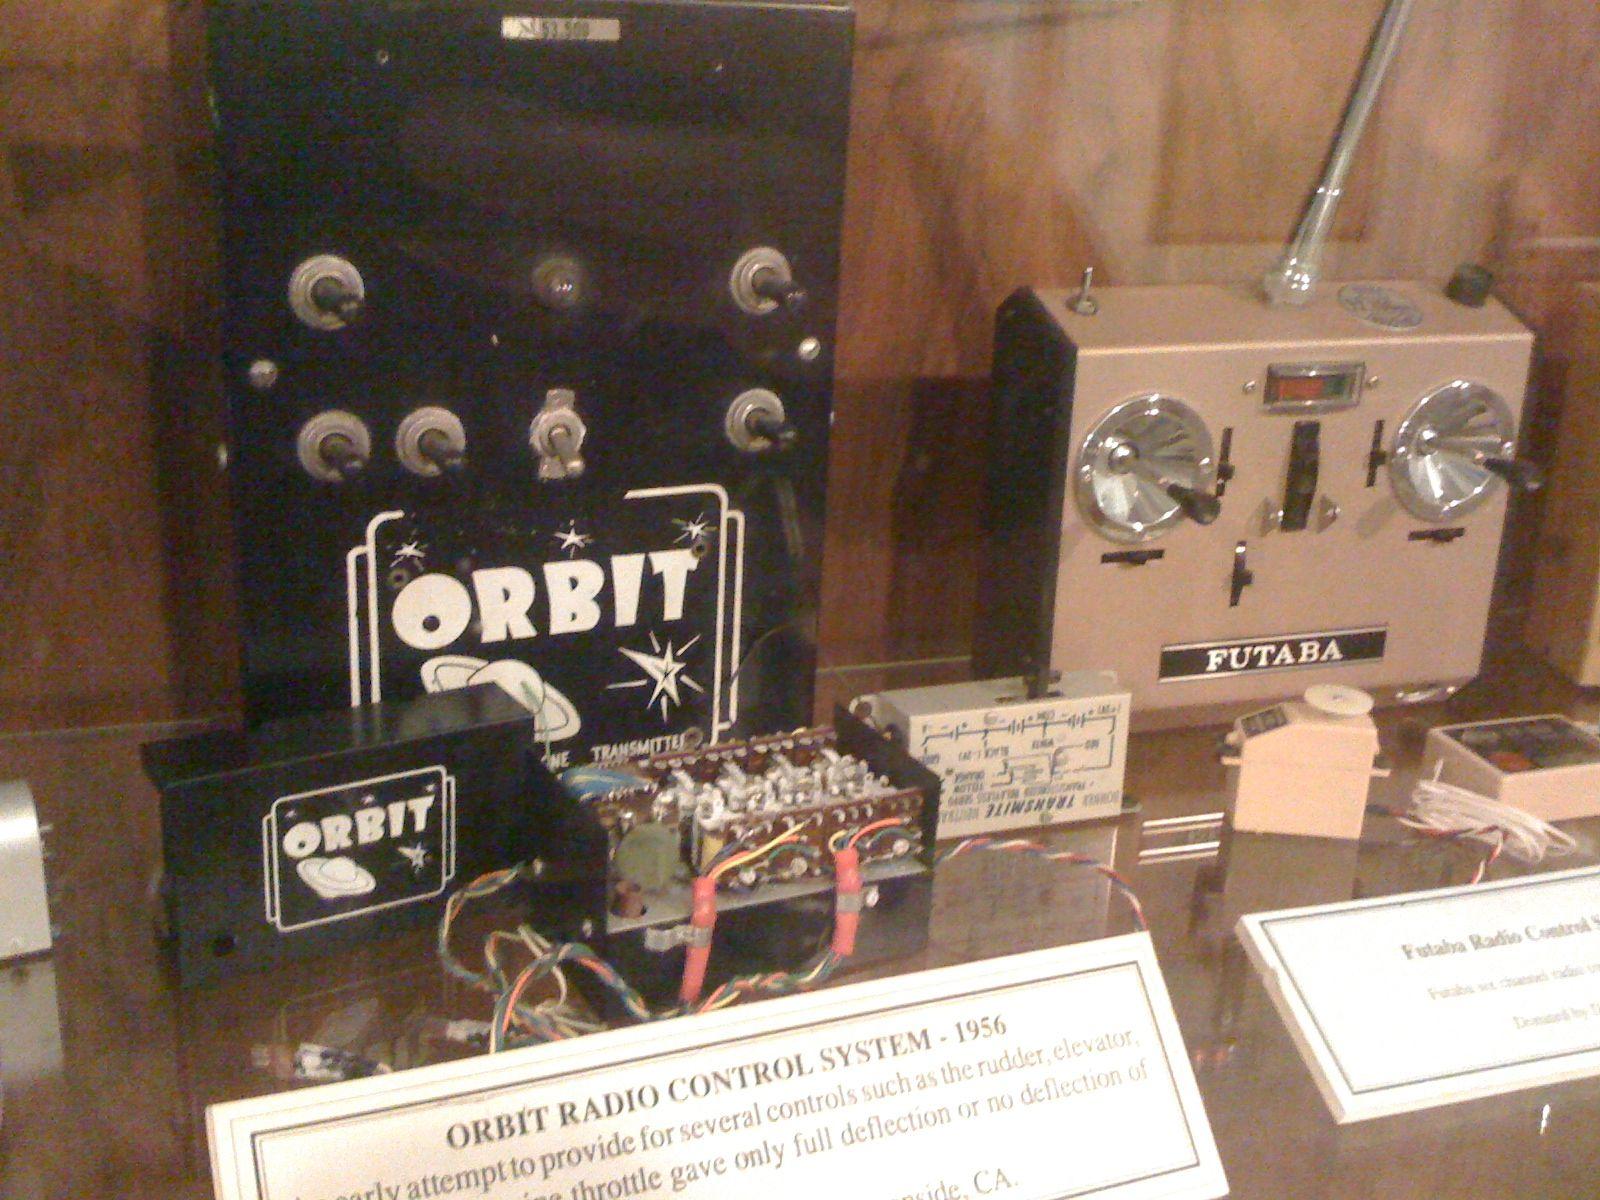 Emetteur Orbit radio control system 1956